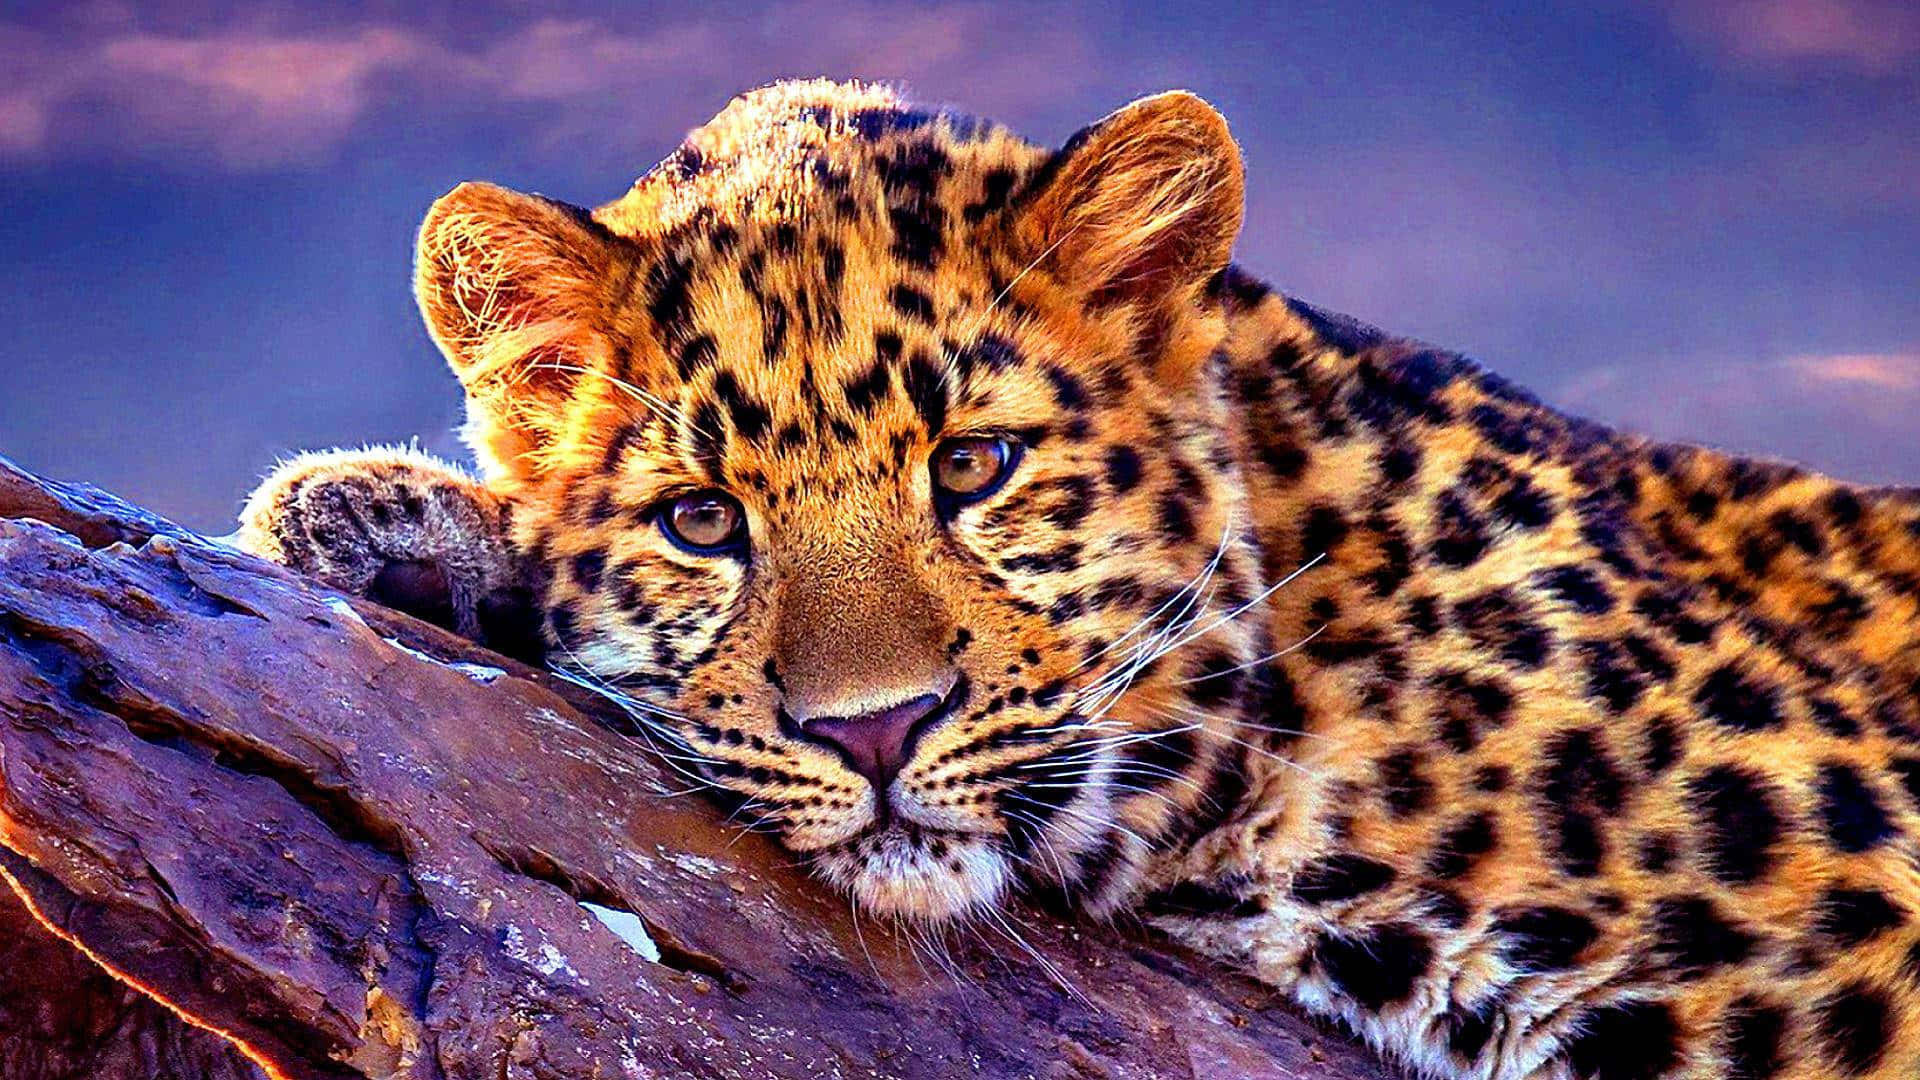 Imagende Un Leopardo Acostado En Una Roca.